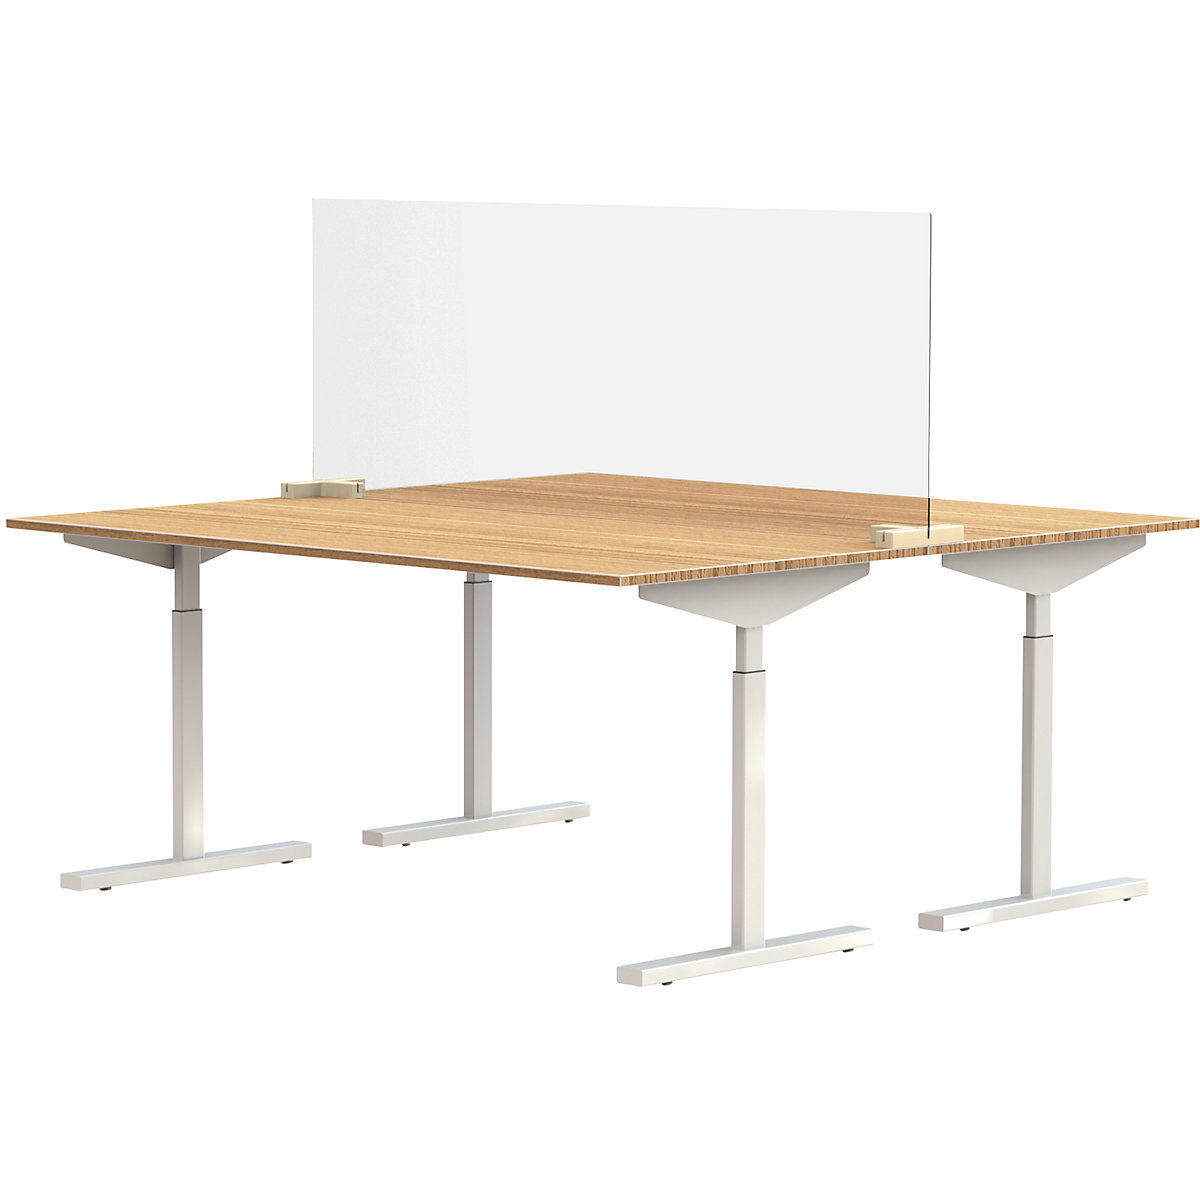 Scheidingsscherm voor bureaus/tafels, incl. 2 verbindingsstukken in T-vorm, h x b = 590 x 1600 mm, vanaf 5 stuks-7